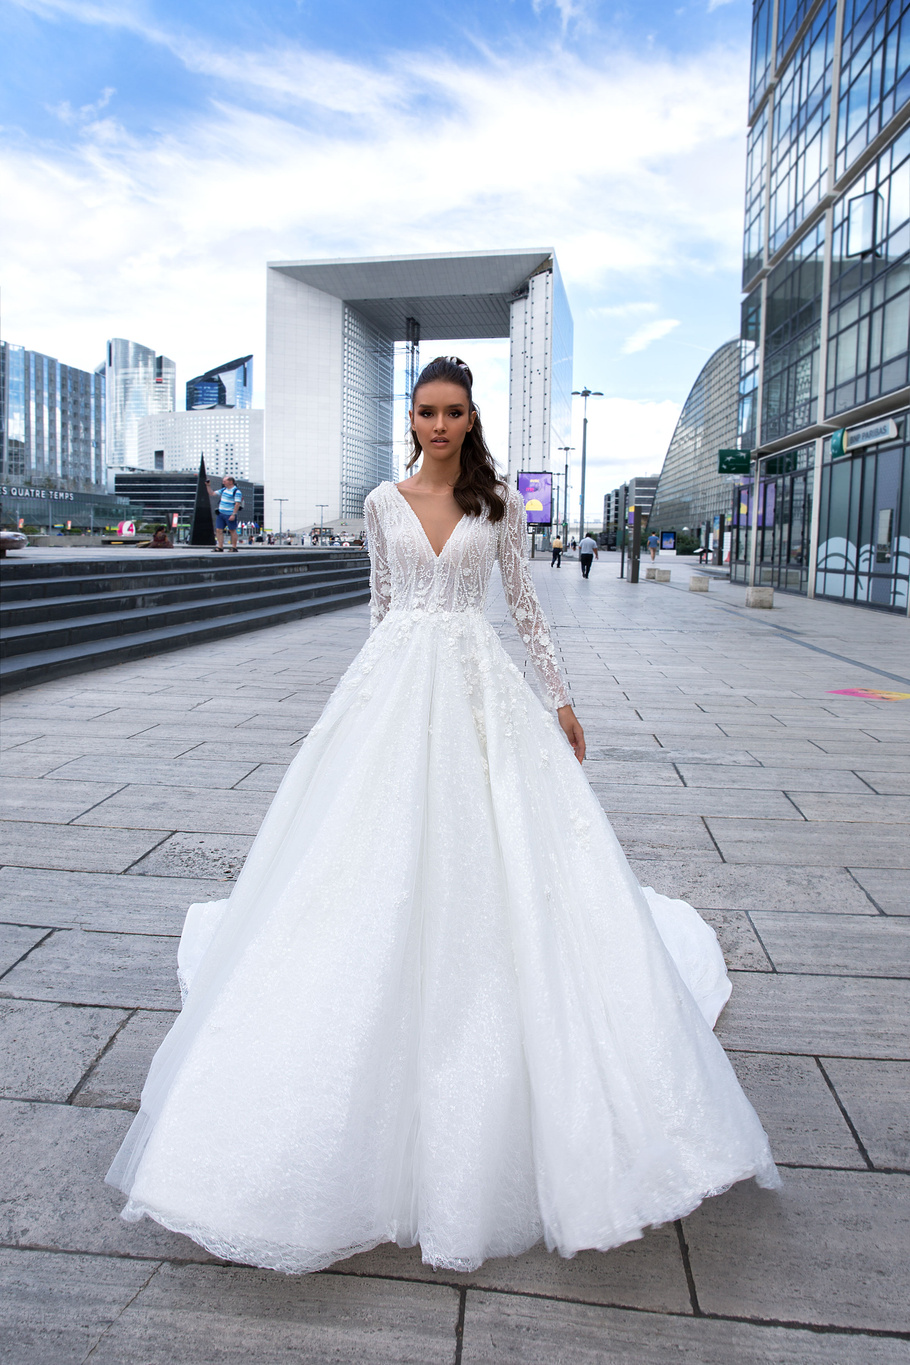 Купить свадебное платье «Ривьера» Кристал Дизайн из коллекции Париж 2019 в Ярославле